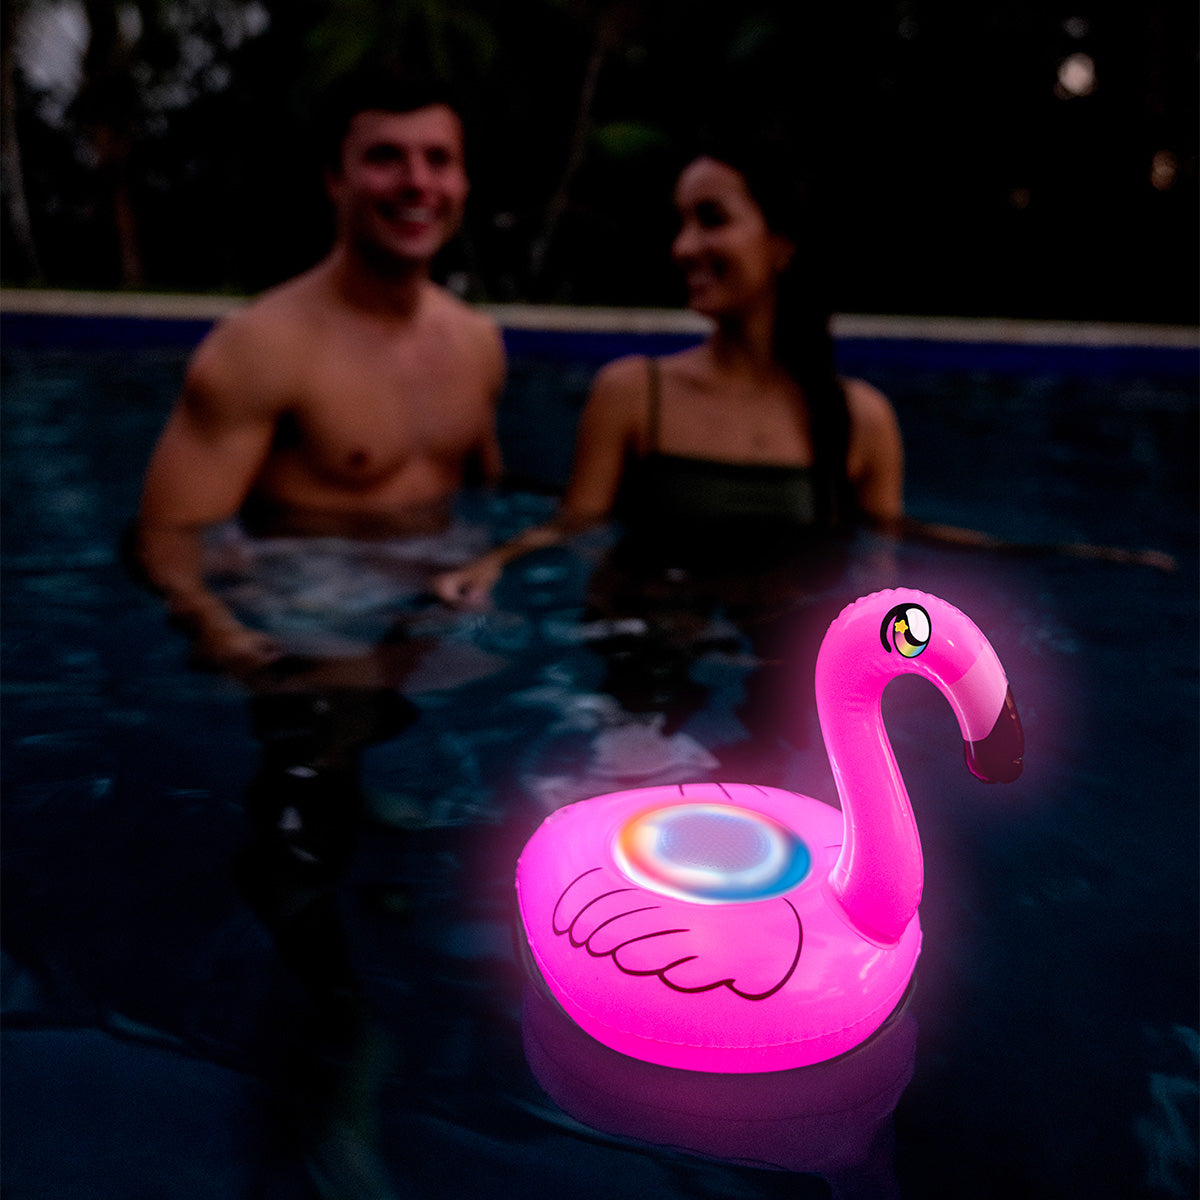 SoundCandy floating LED Flamingo Speaker with Bluetooth